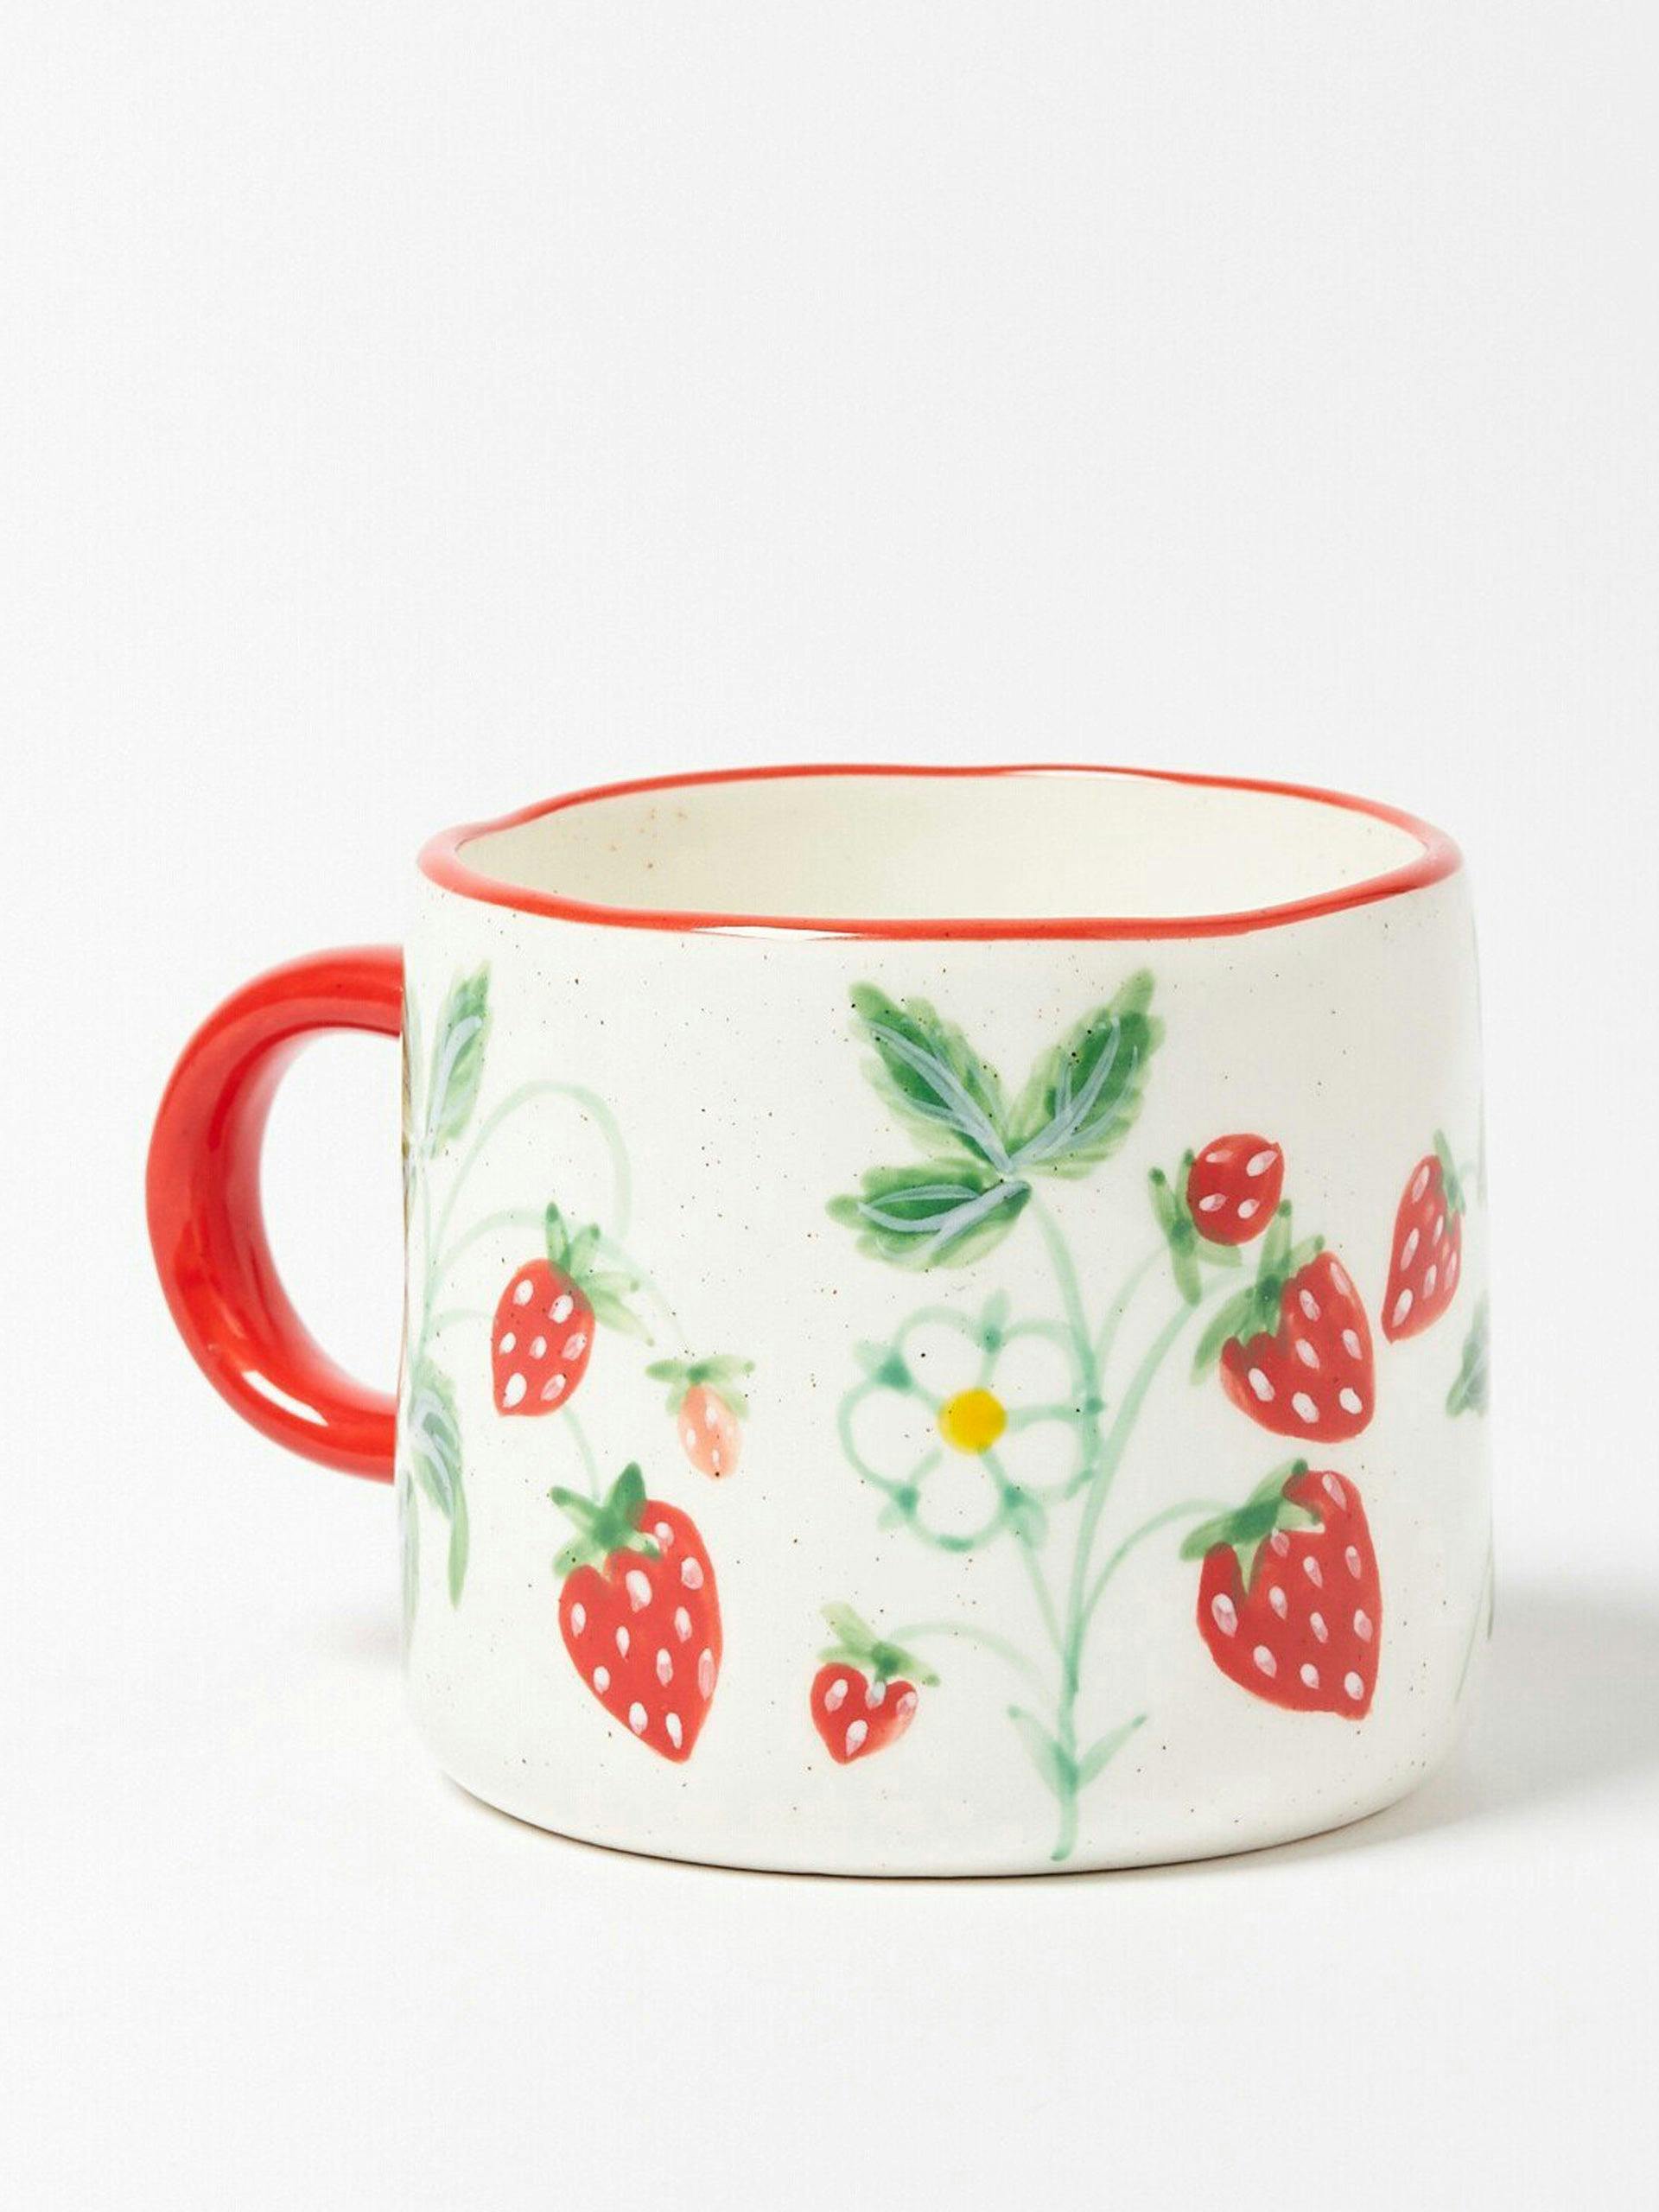 Strawberry ceramic mug